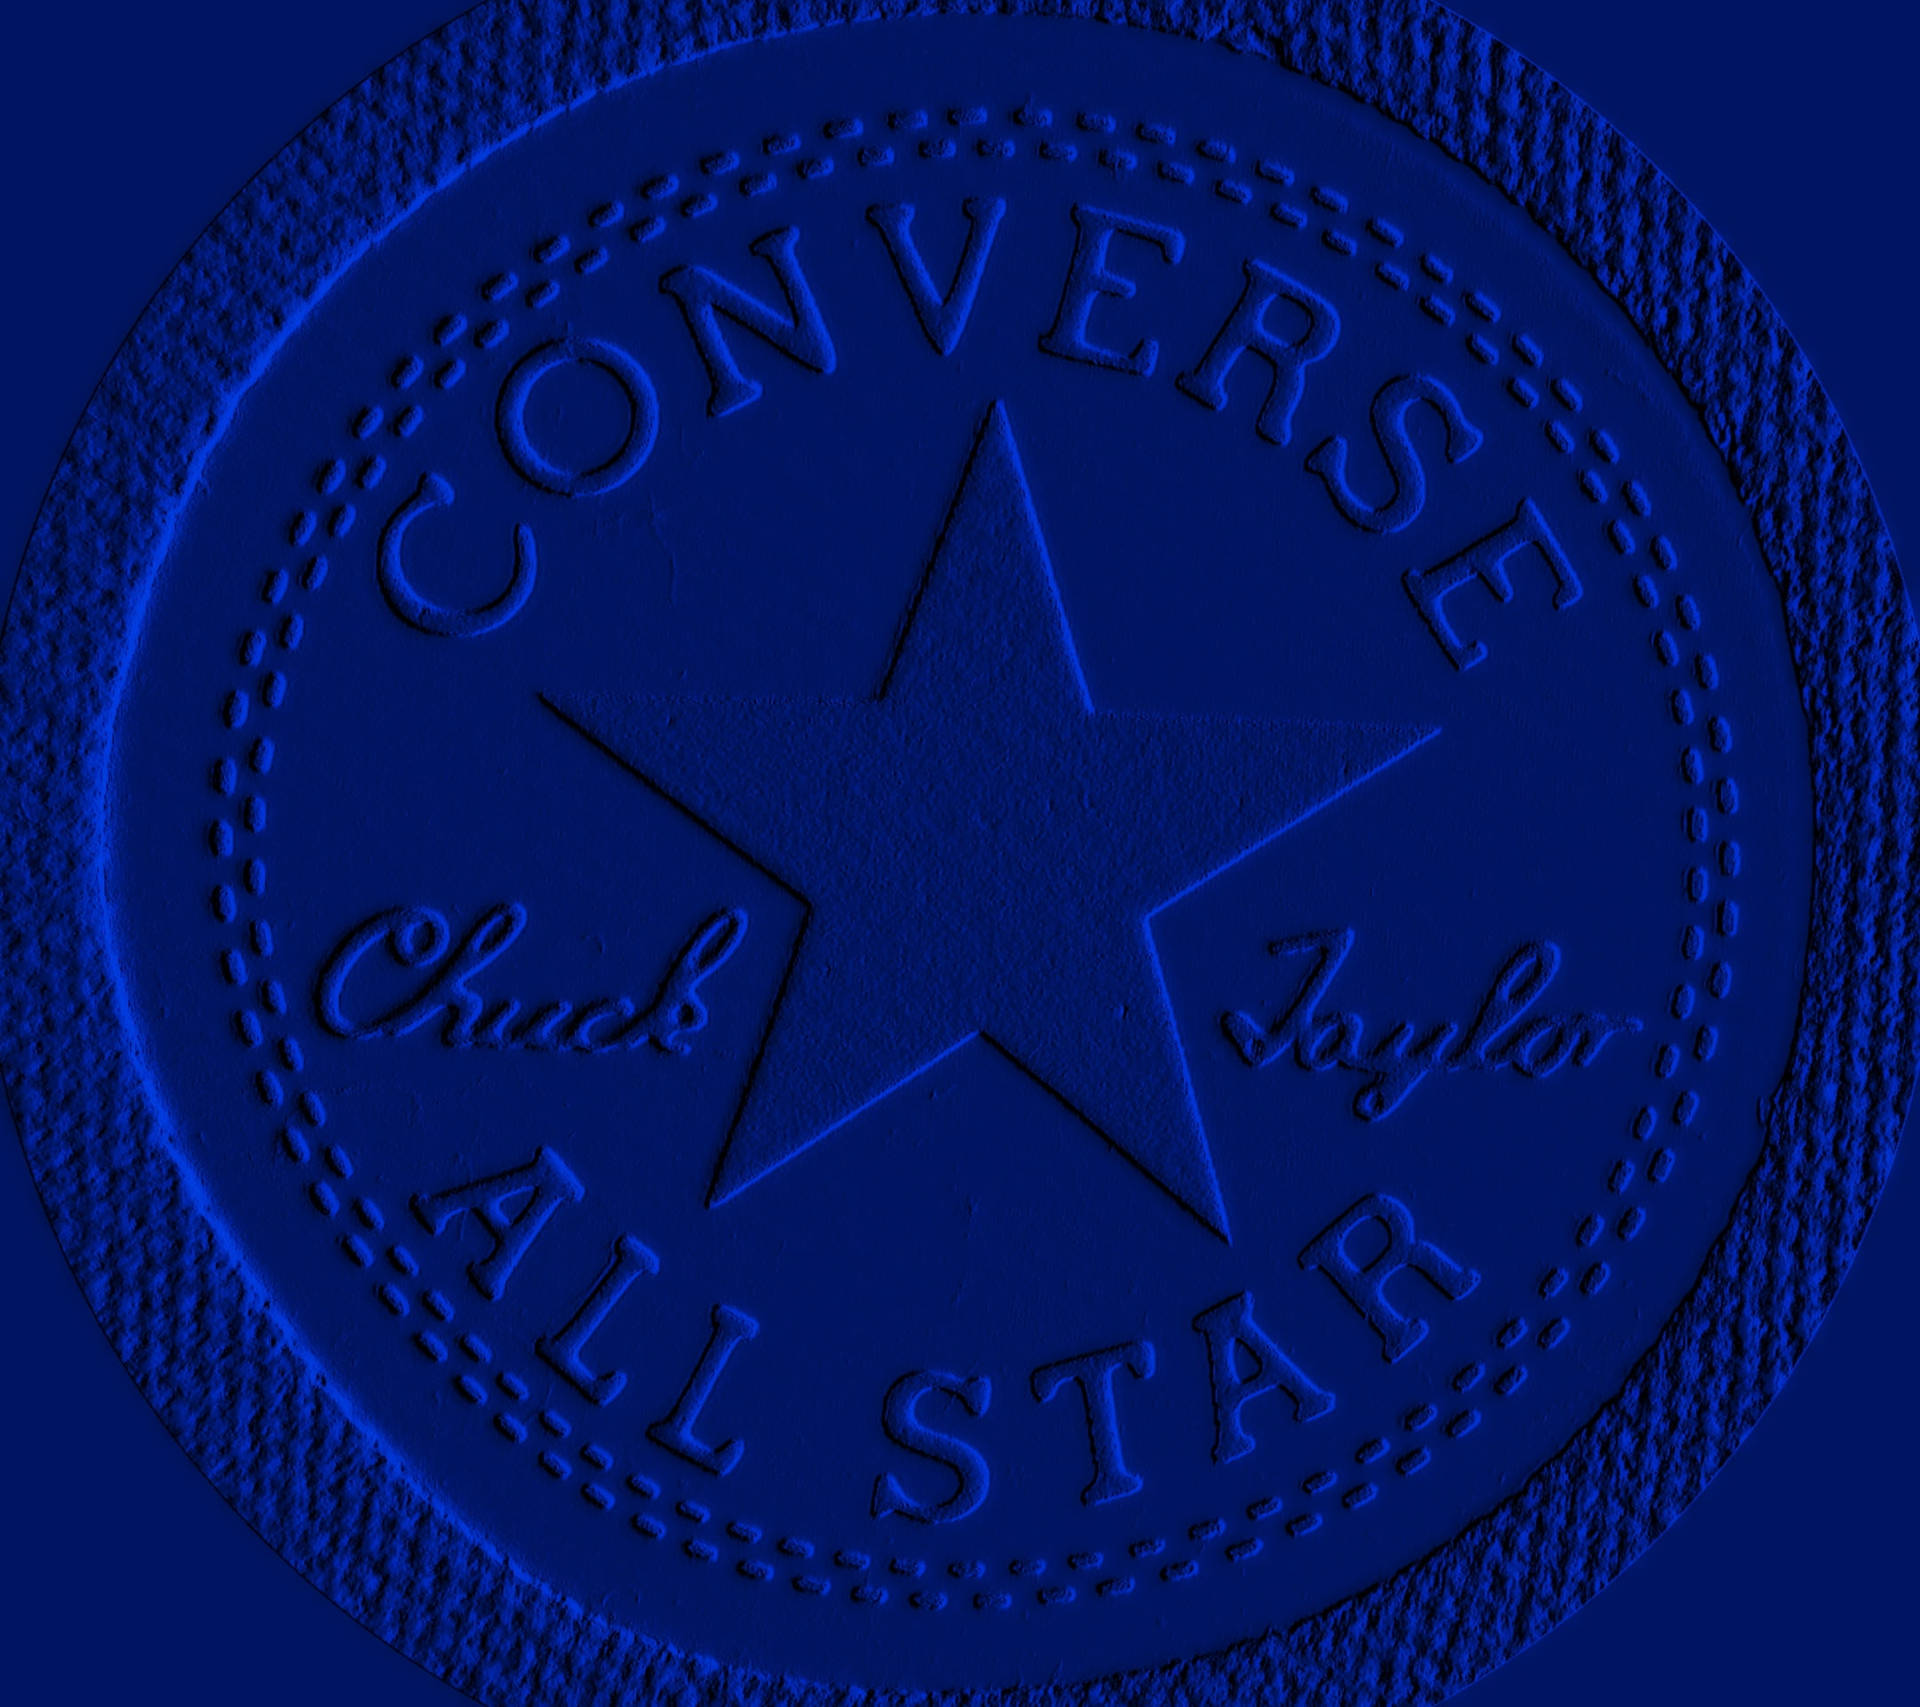 Logotipoconverse Em Relevo Azul. Papel de Parede